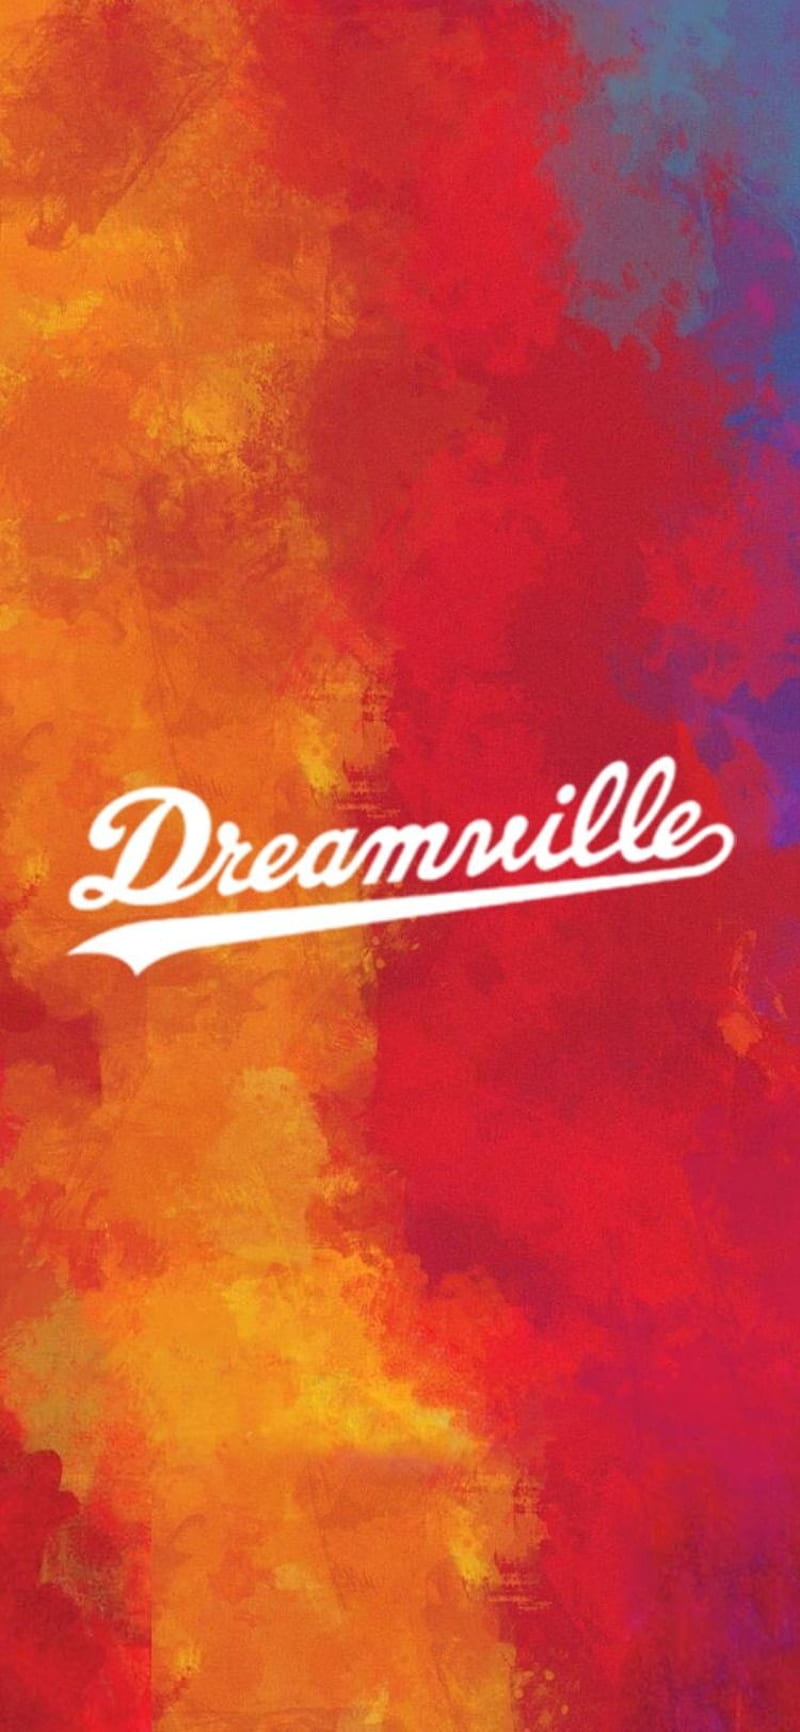 Dreamville, hip hop, j cole, music, rap, HD phone wallpaper